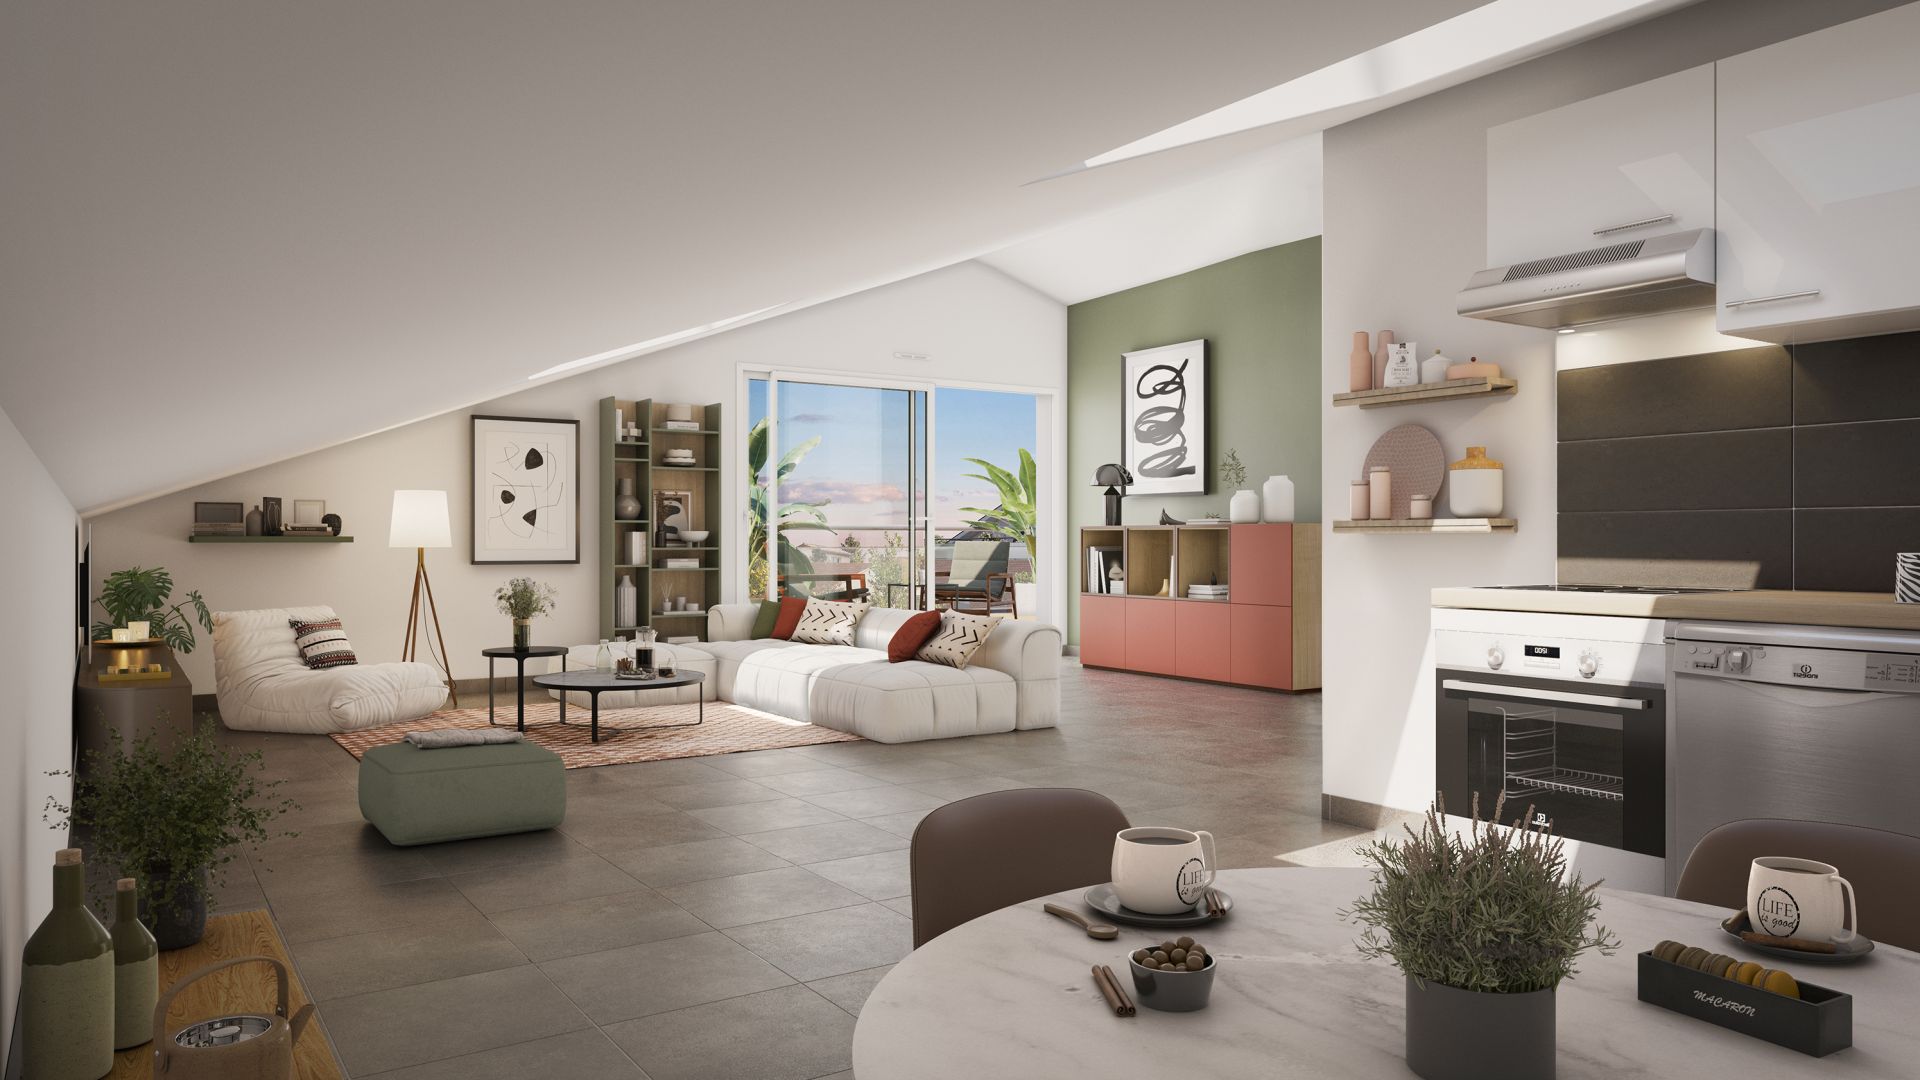 Greencity immobilier - achat appartements neufs du T2 au T3 - Résidence Le Trévise - 31600 EAUNES